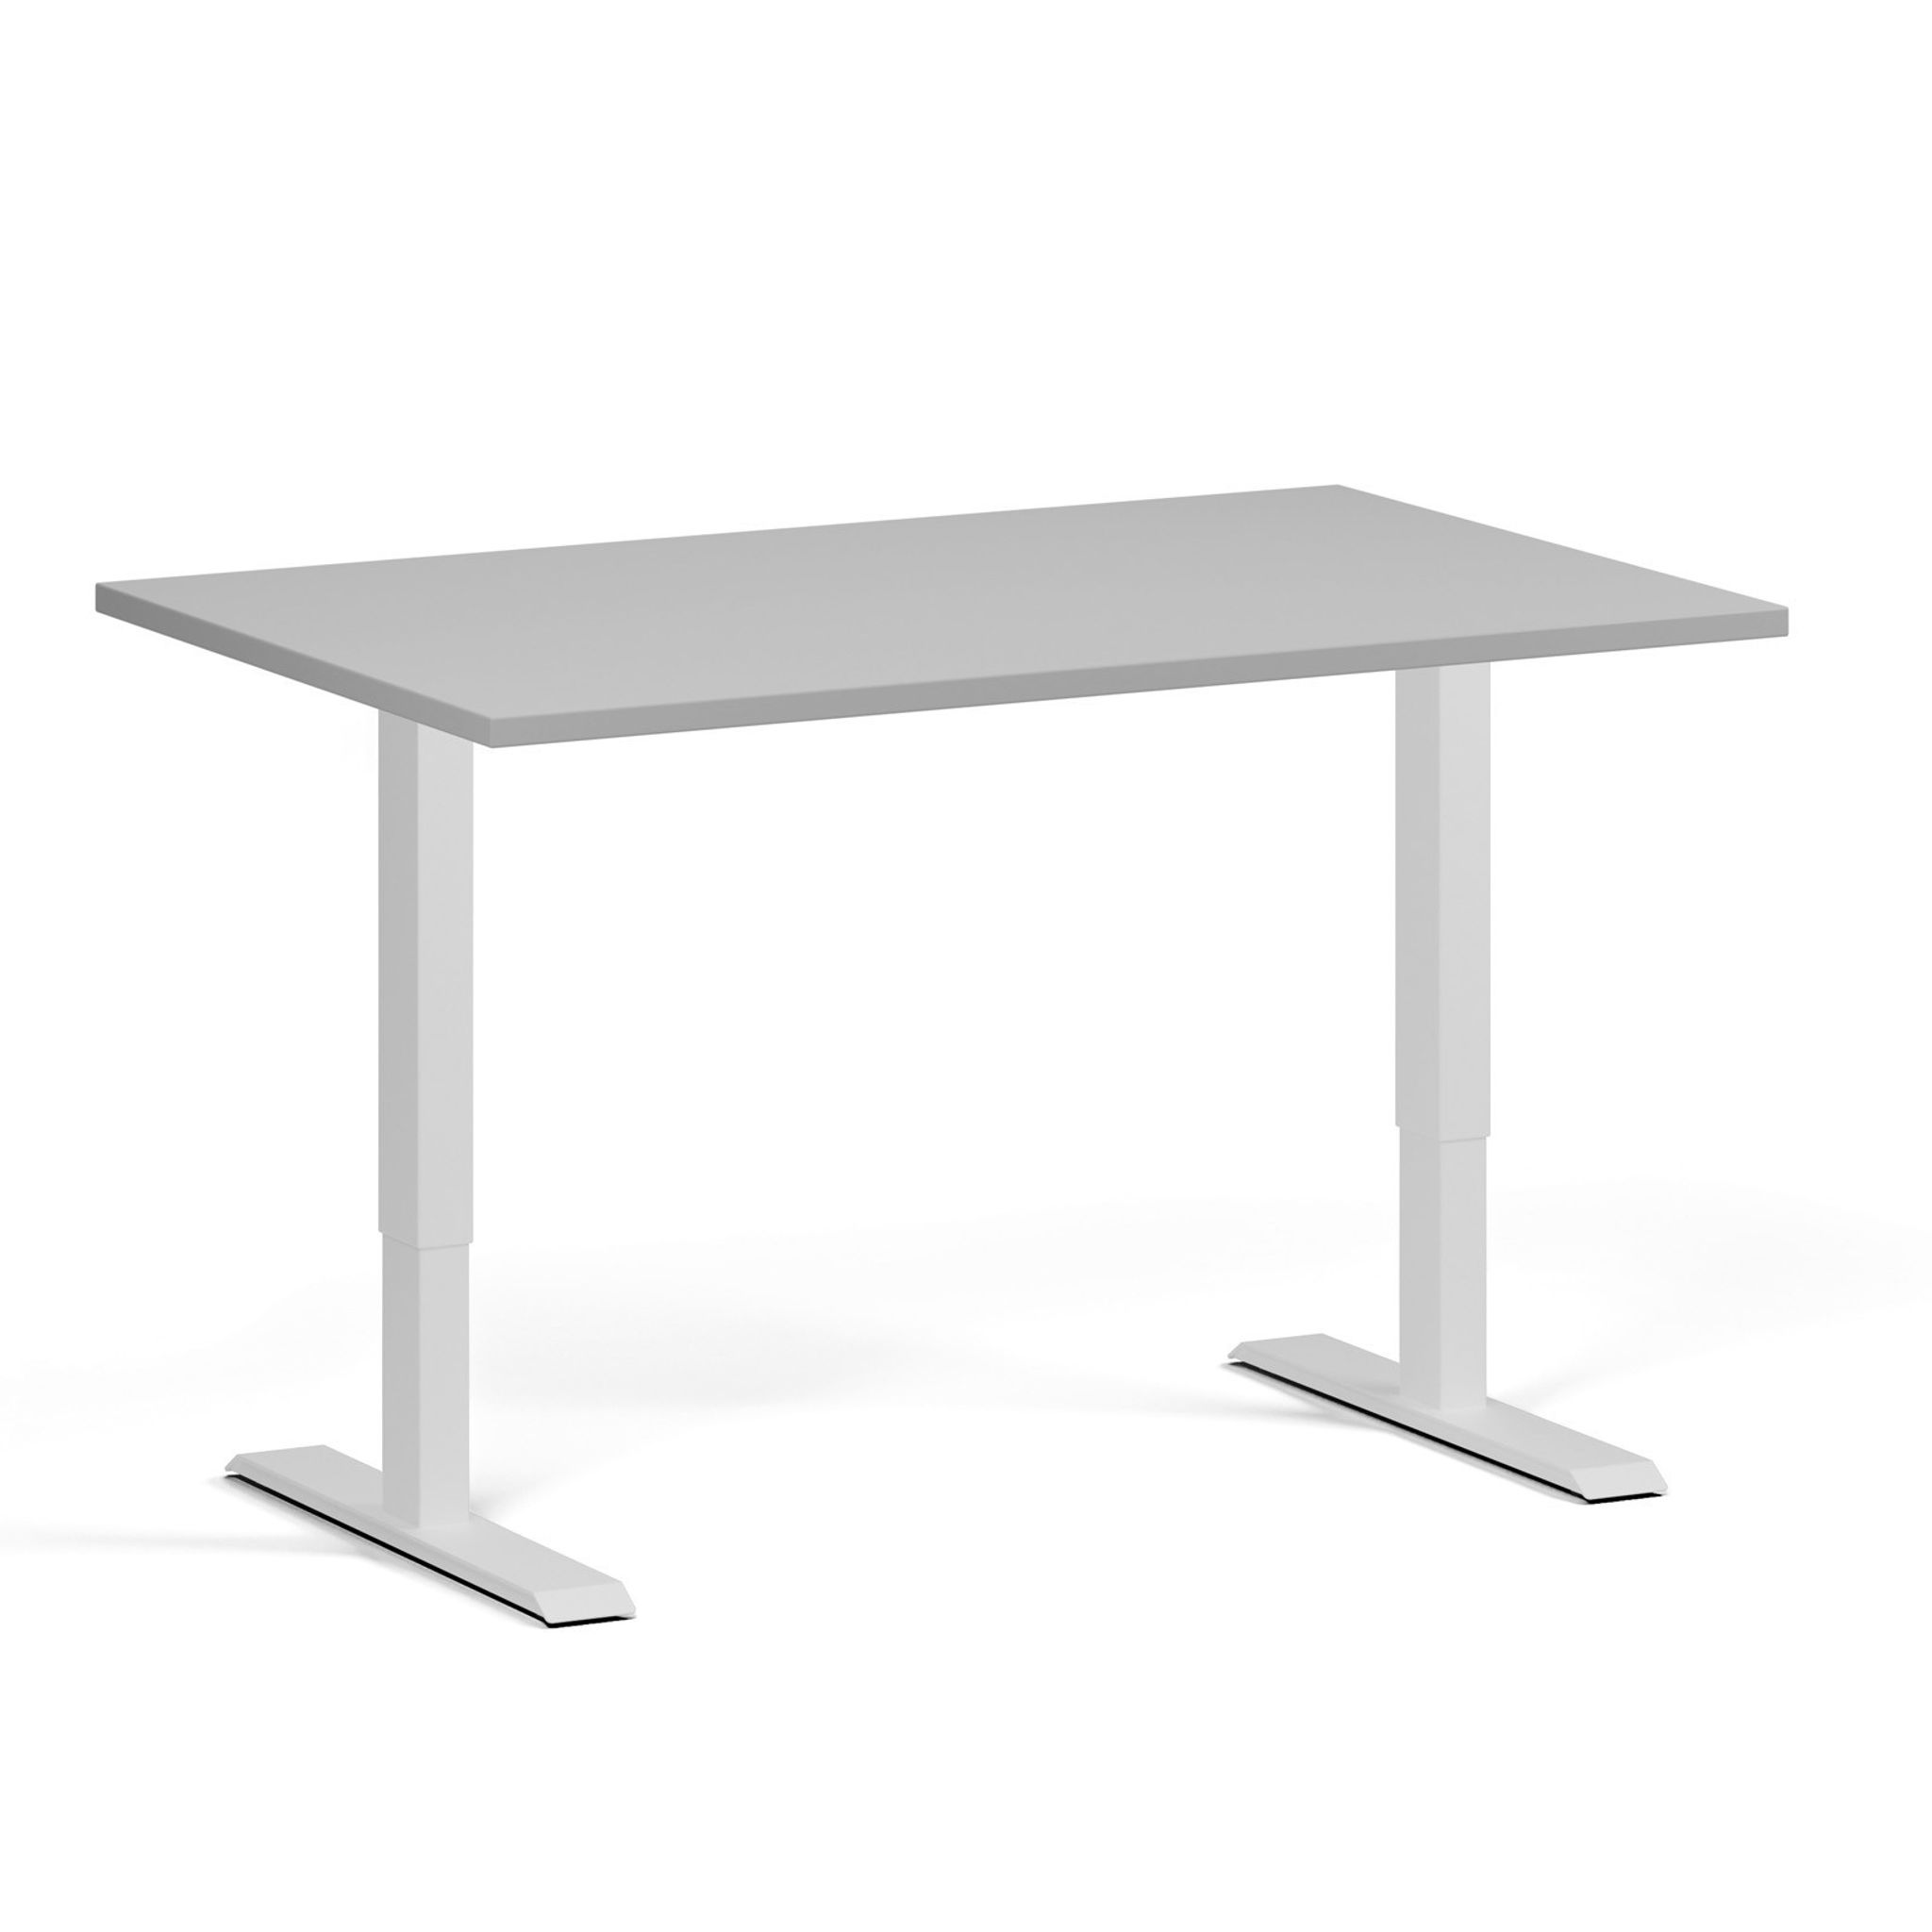 Výškově nastavitelný stůl, 1 motor, 745 - 1235 mm, deska 1200 x 800 mm, bílá podnož, šedá